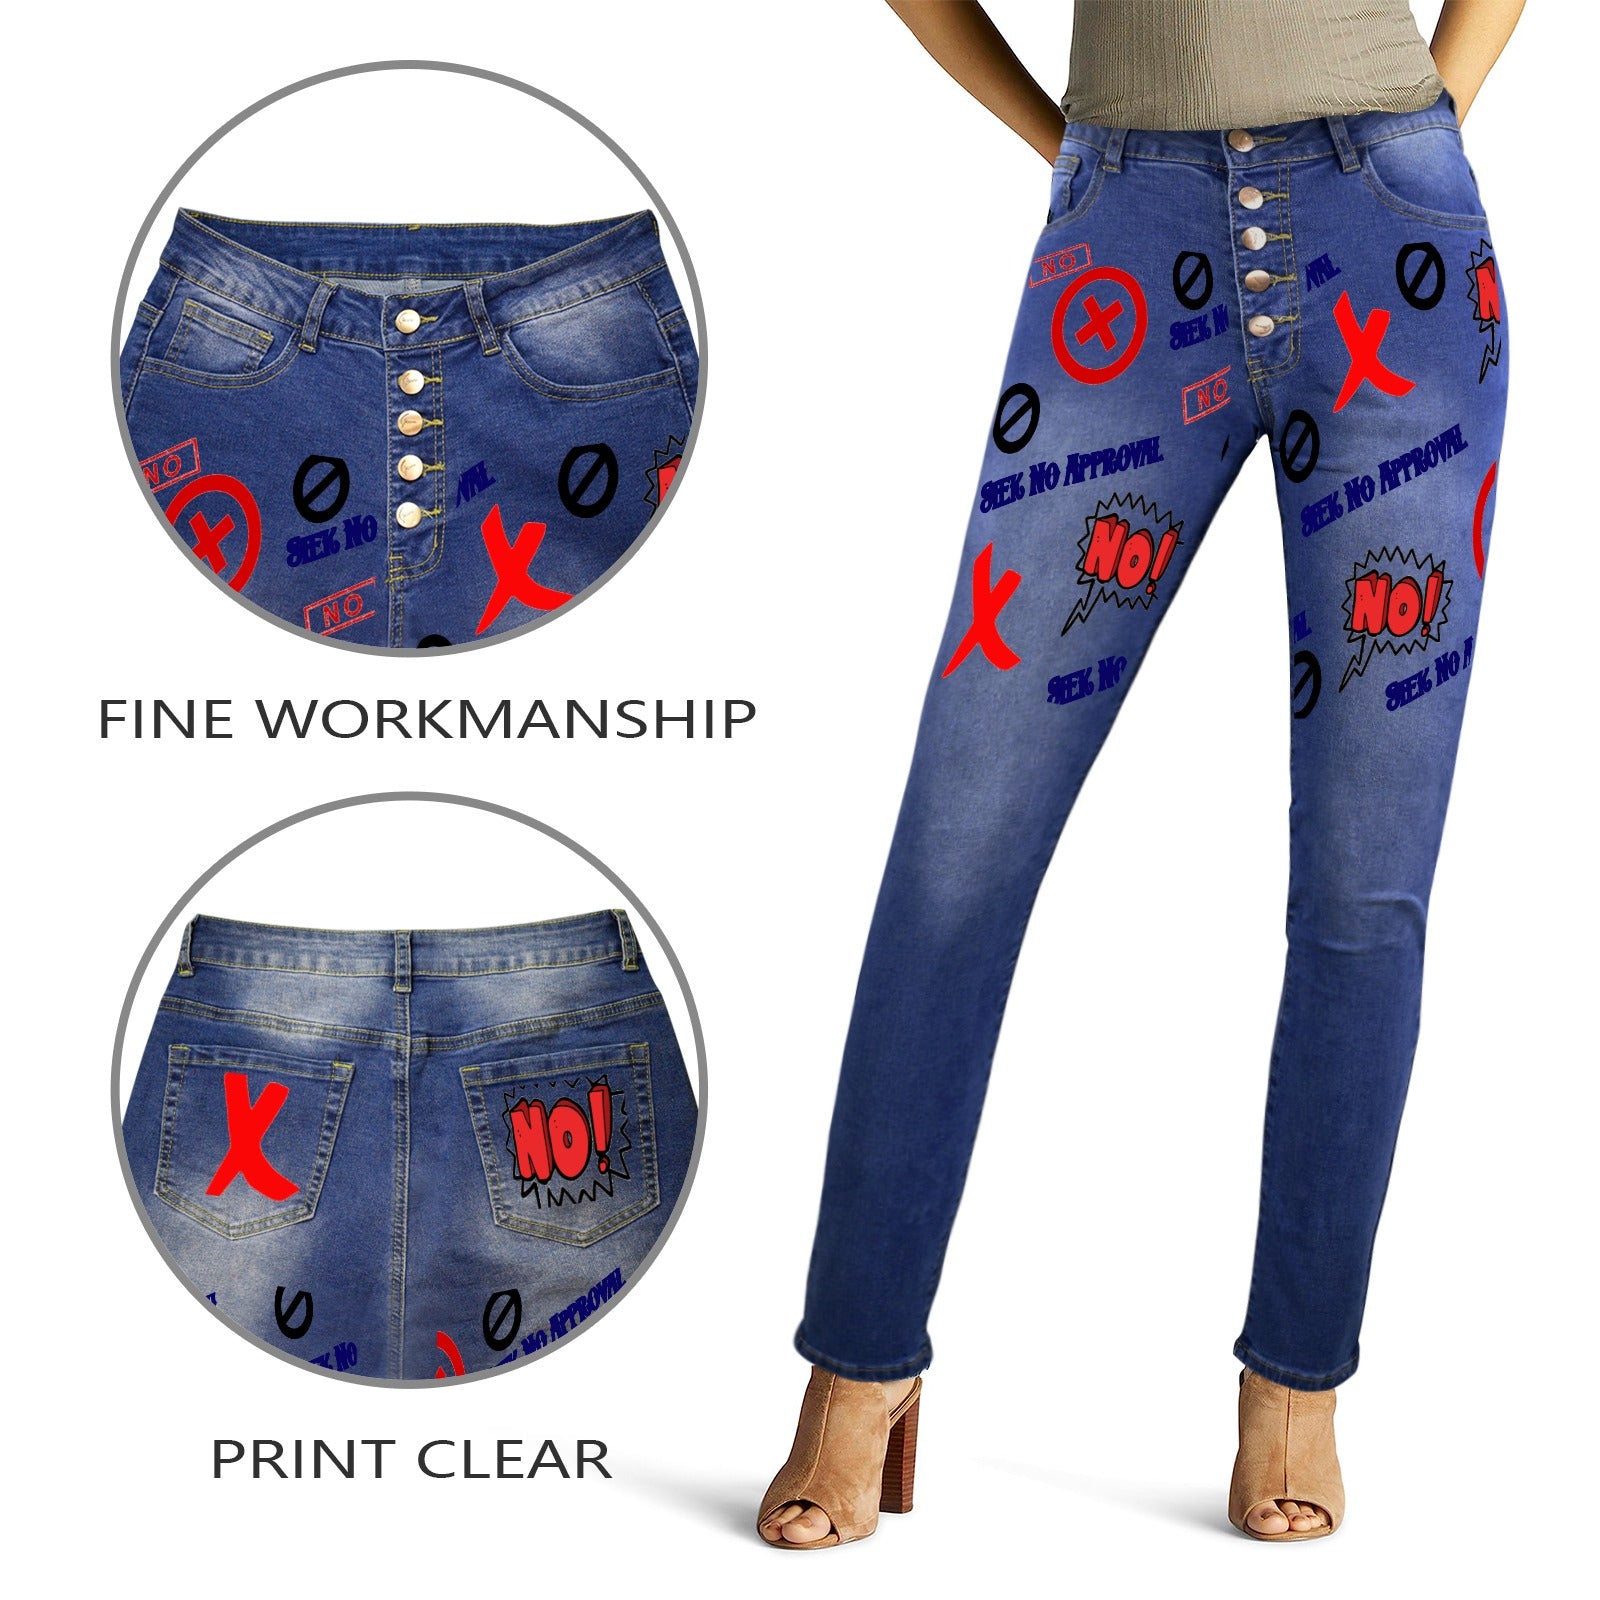 Seek No Approval Women's Jeans - women's jeans at TFC&H Co.